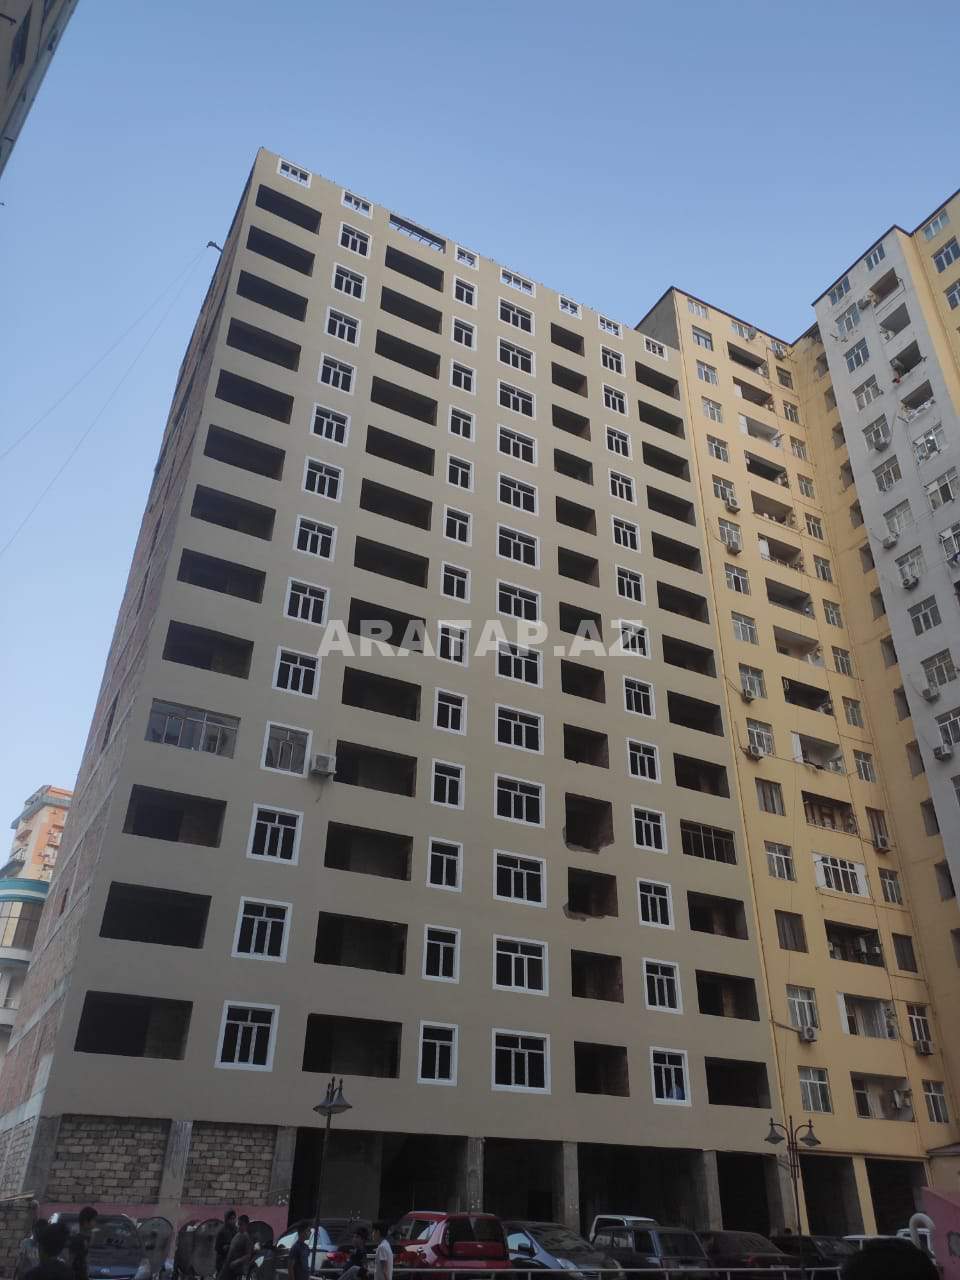 Ehmedli  de Baku Medical plaza yani   Yeni  İnsaa olunmus binada  Govher Mtk da   1 otaq  Podmayak menzil  satılır.